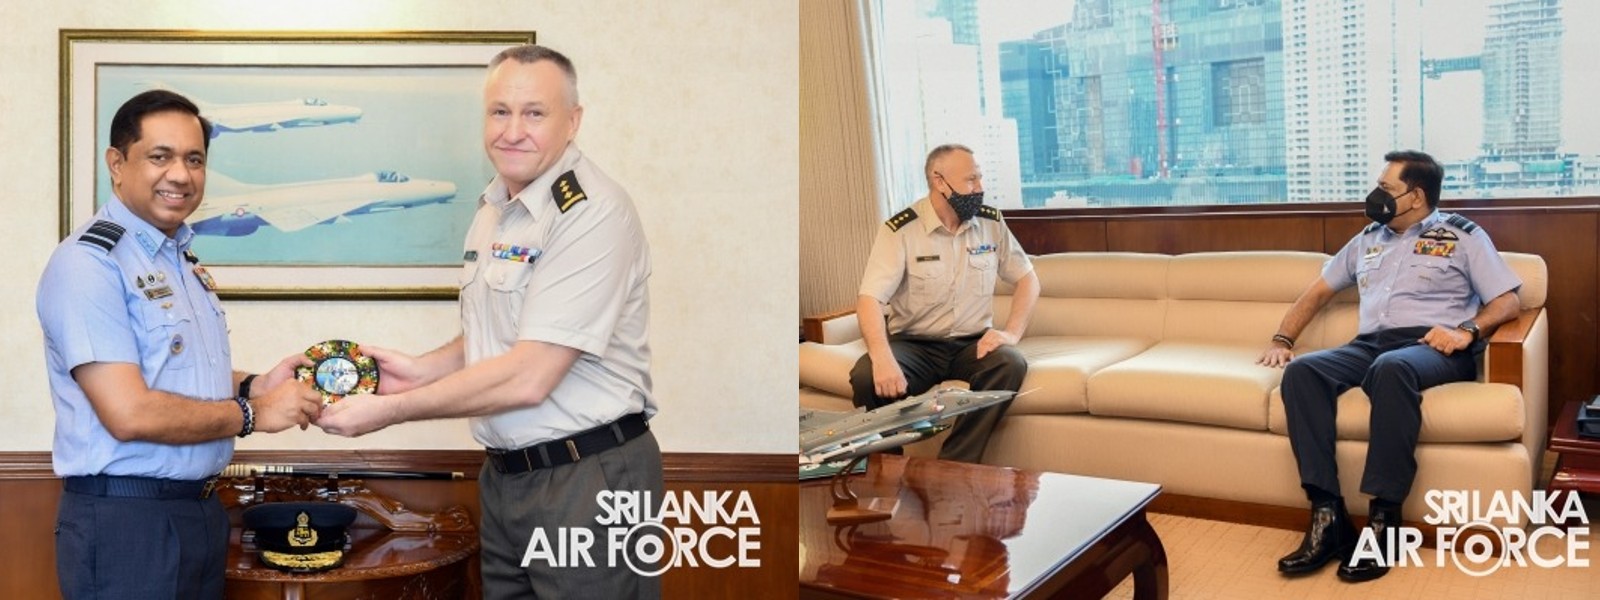 Ukraine Defence Attache meets Air Force Commander